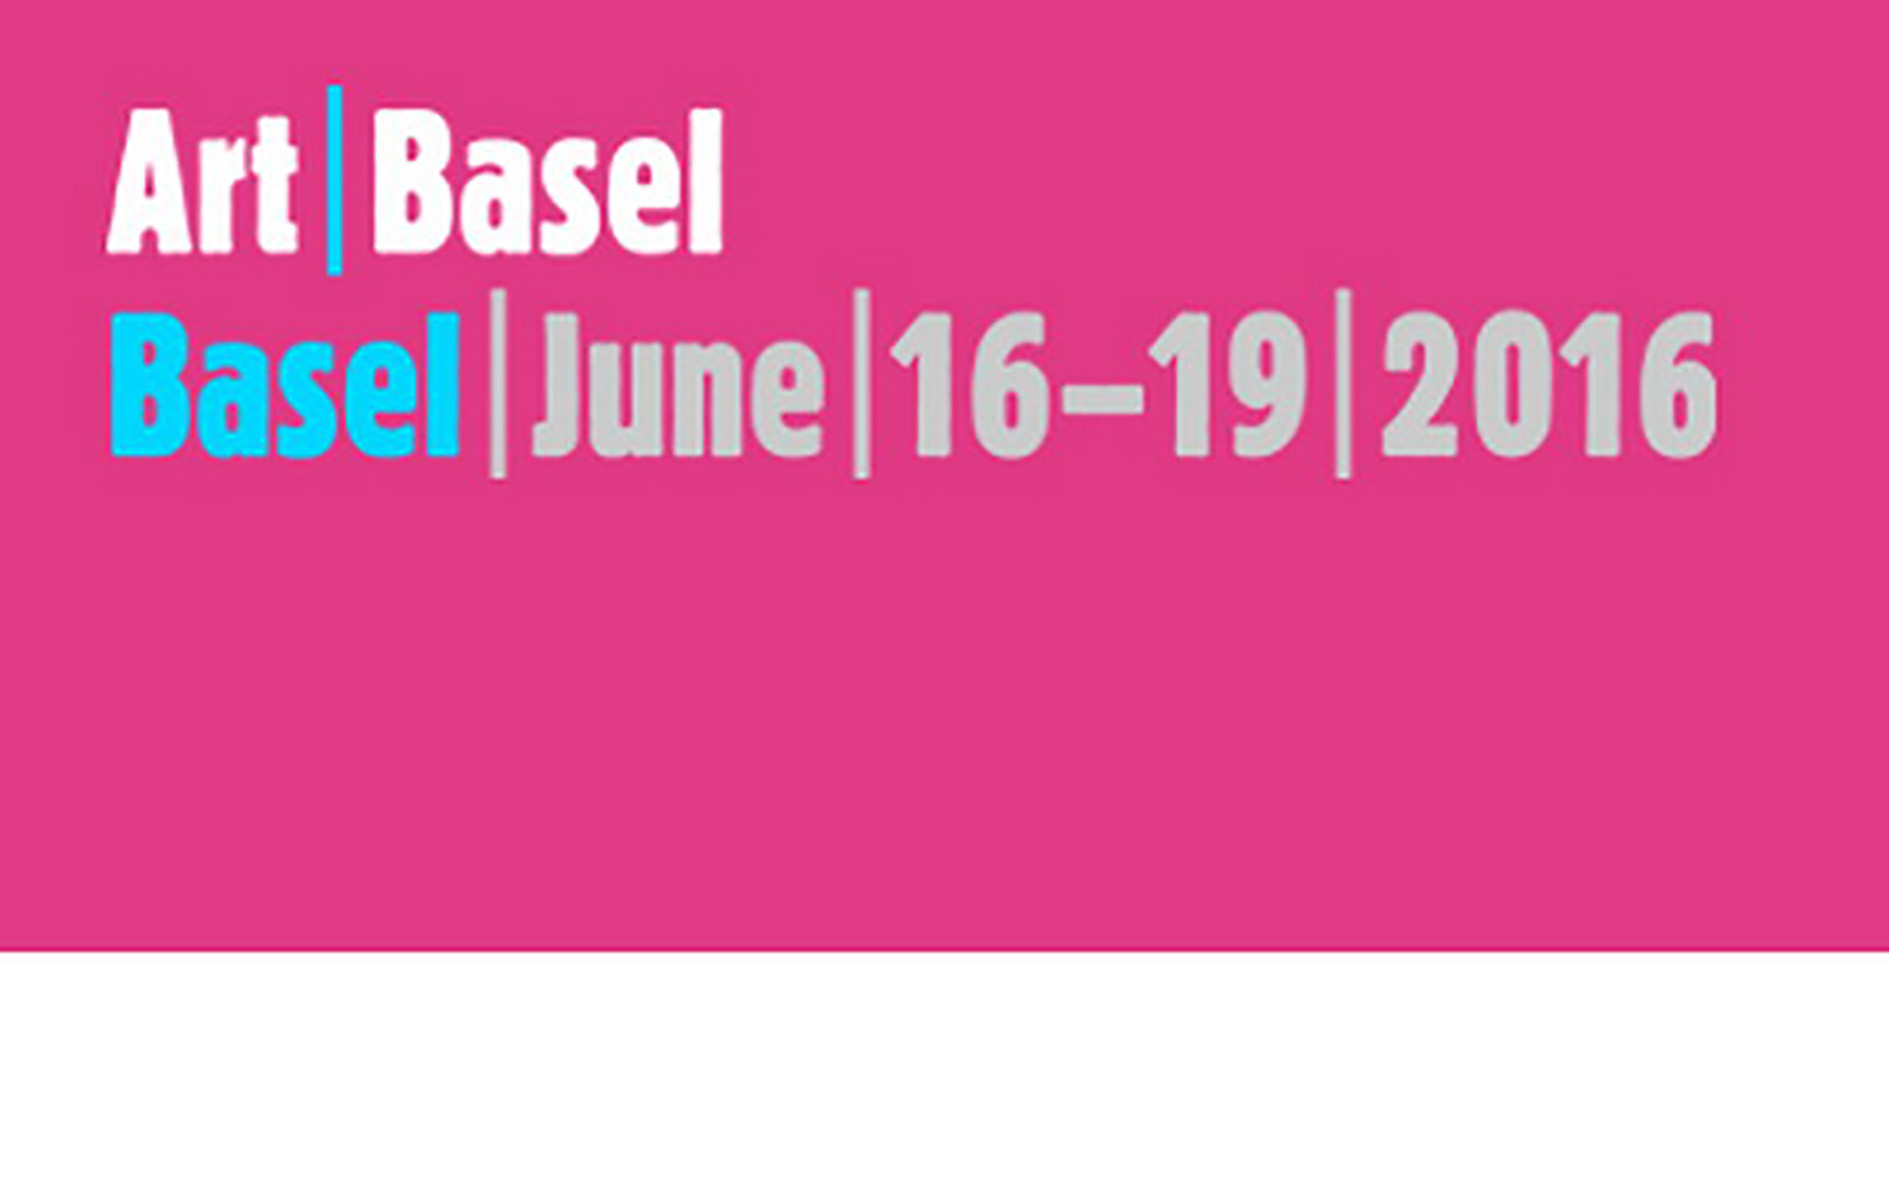 ART BASEL, BÂLE, DU 16 AU 19 JUIN 2016